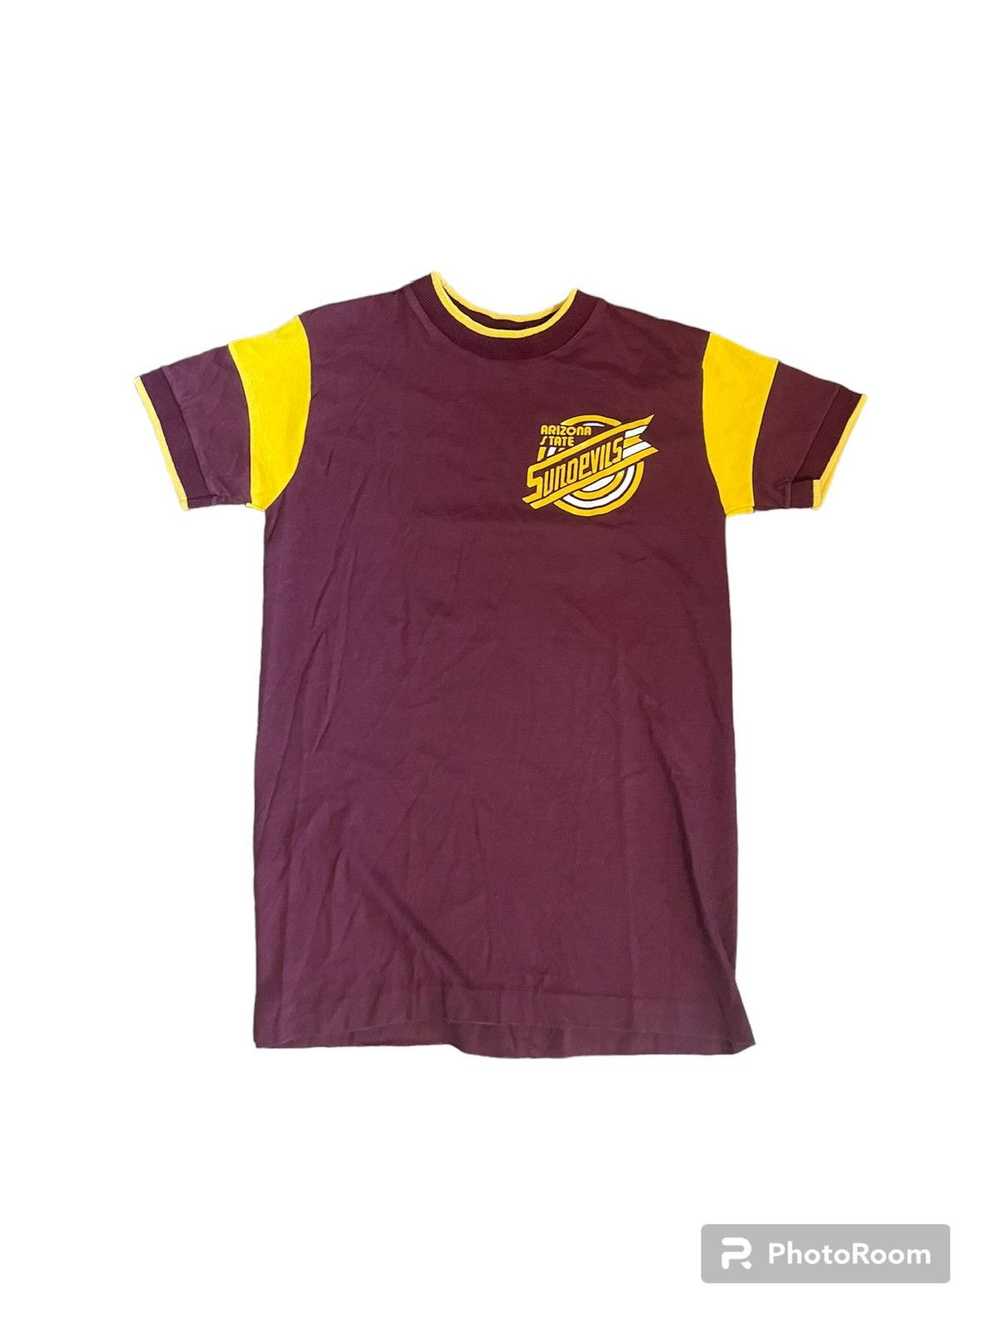 Champion × Vintage 1970s Arizona sundevils T shirt - image 1